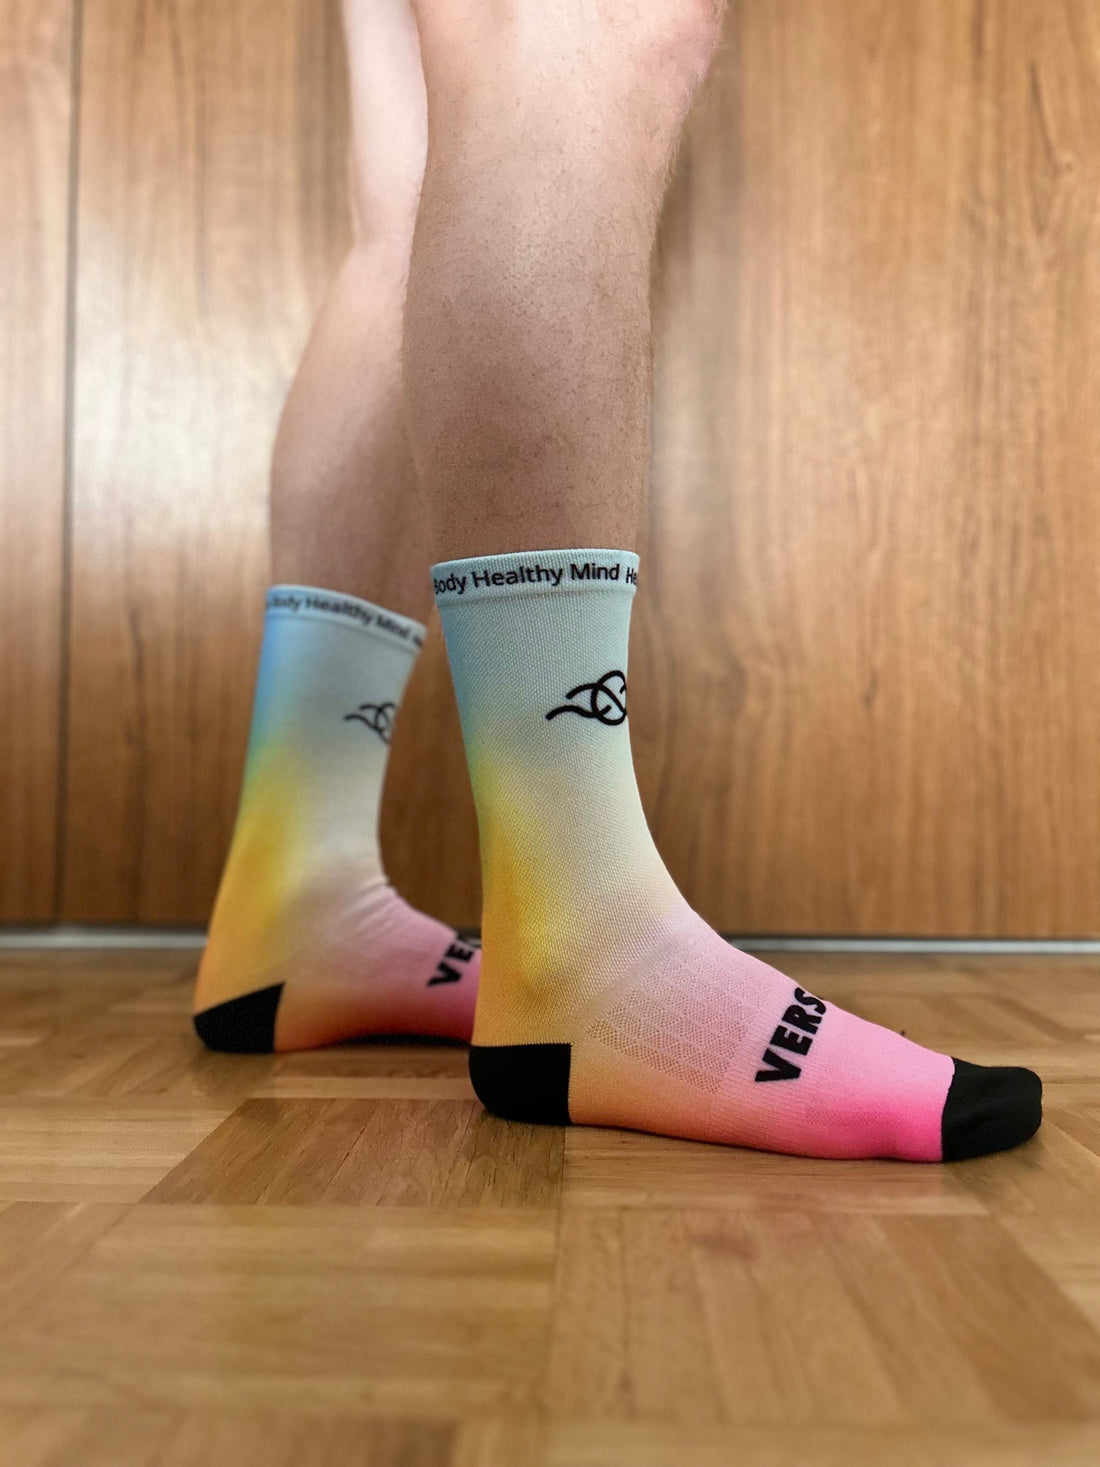 HBHM Pride Socks